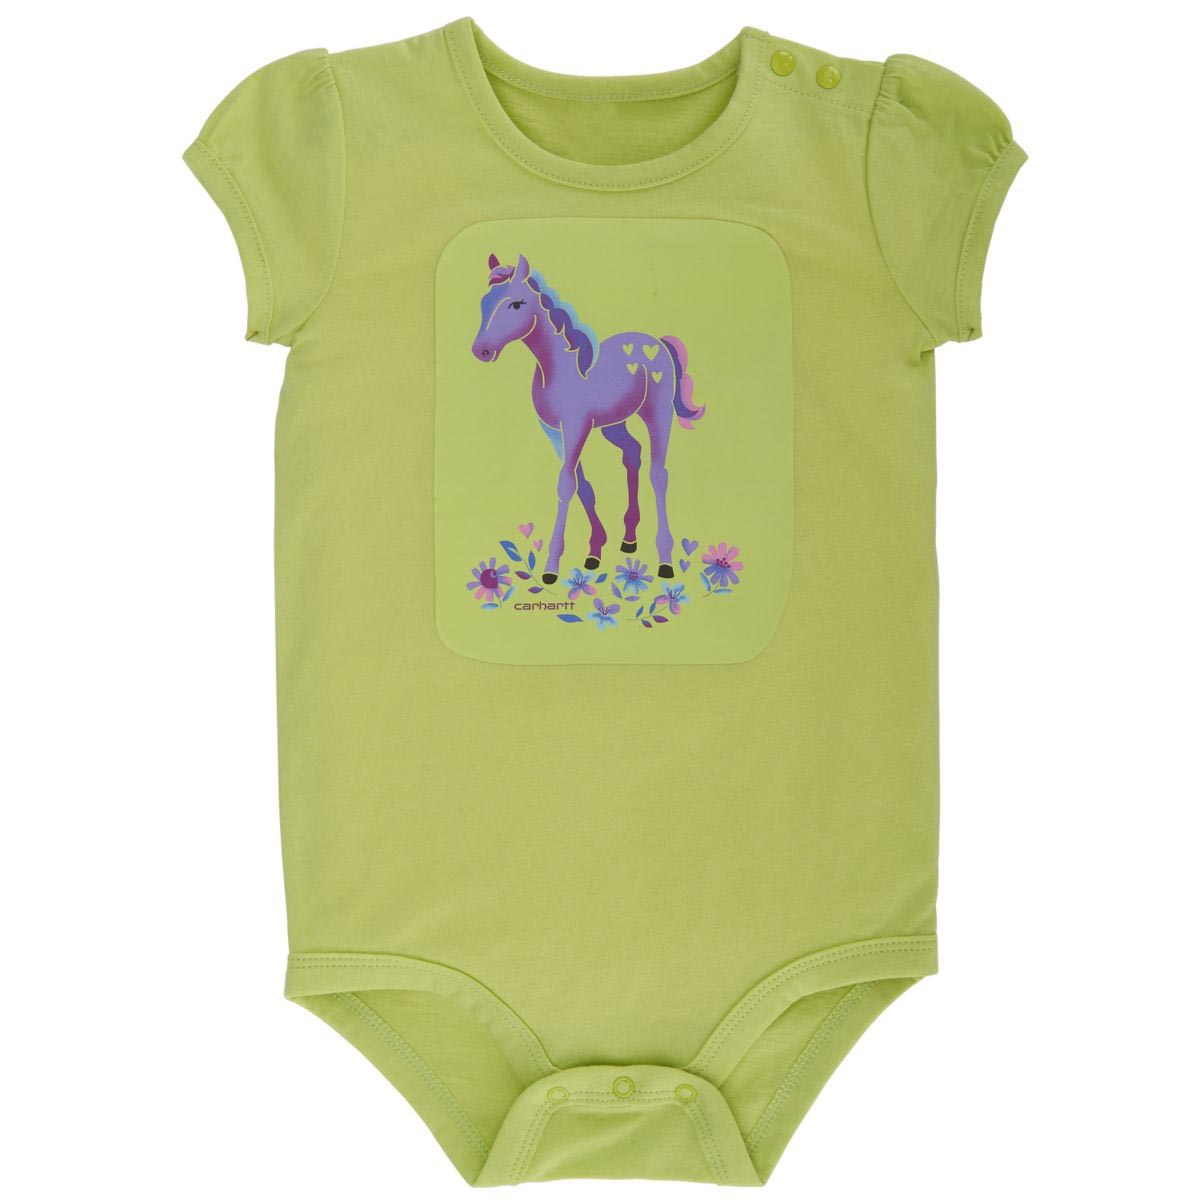 Carhartt Infant Girls I Heart Horses Bodyshirt